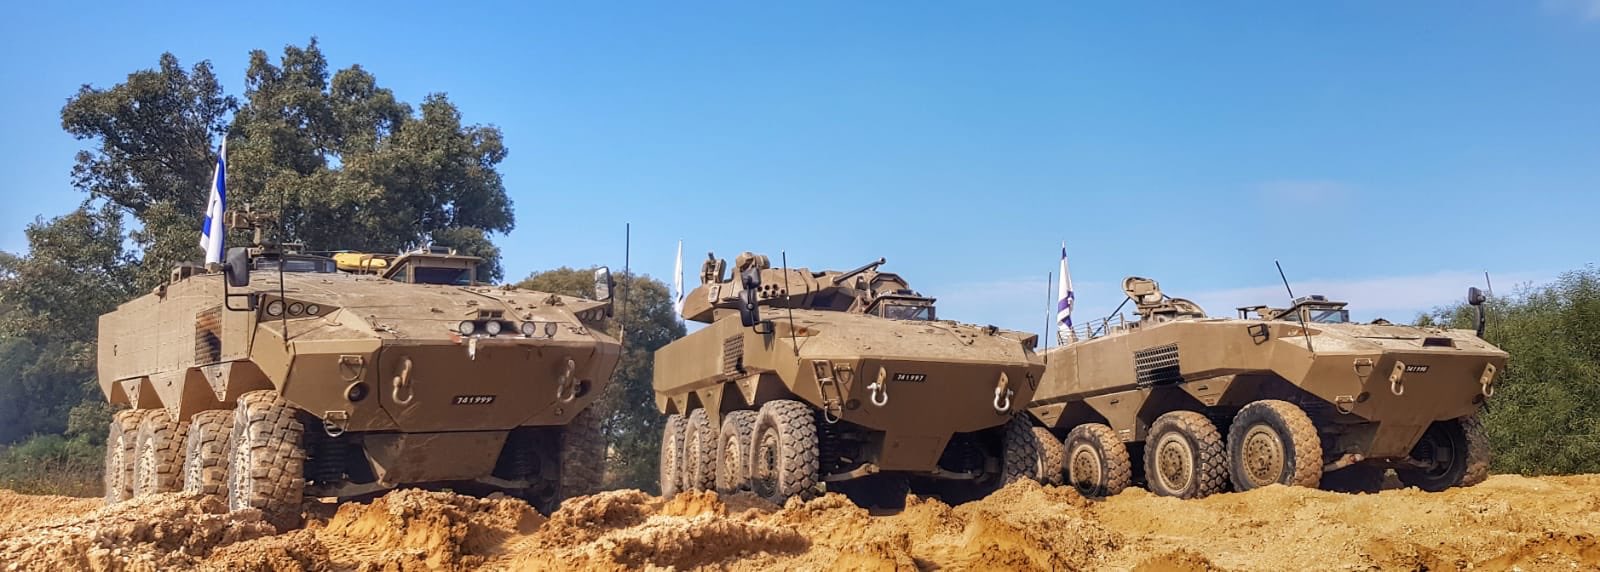 Ισραήλ: Το τροχοφόρο ΤΟΜΠ Eitan μπαίνει  σε παραγωγή